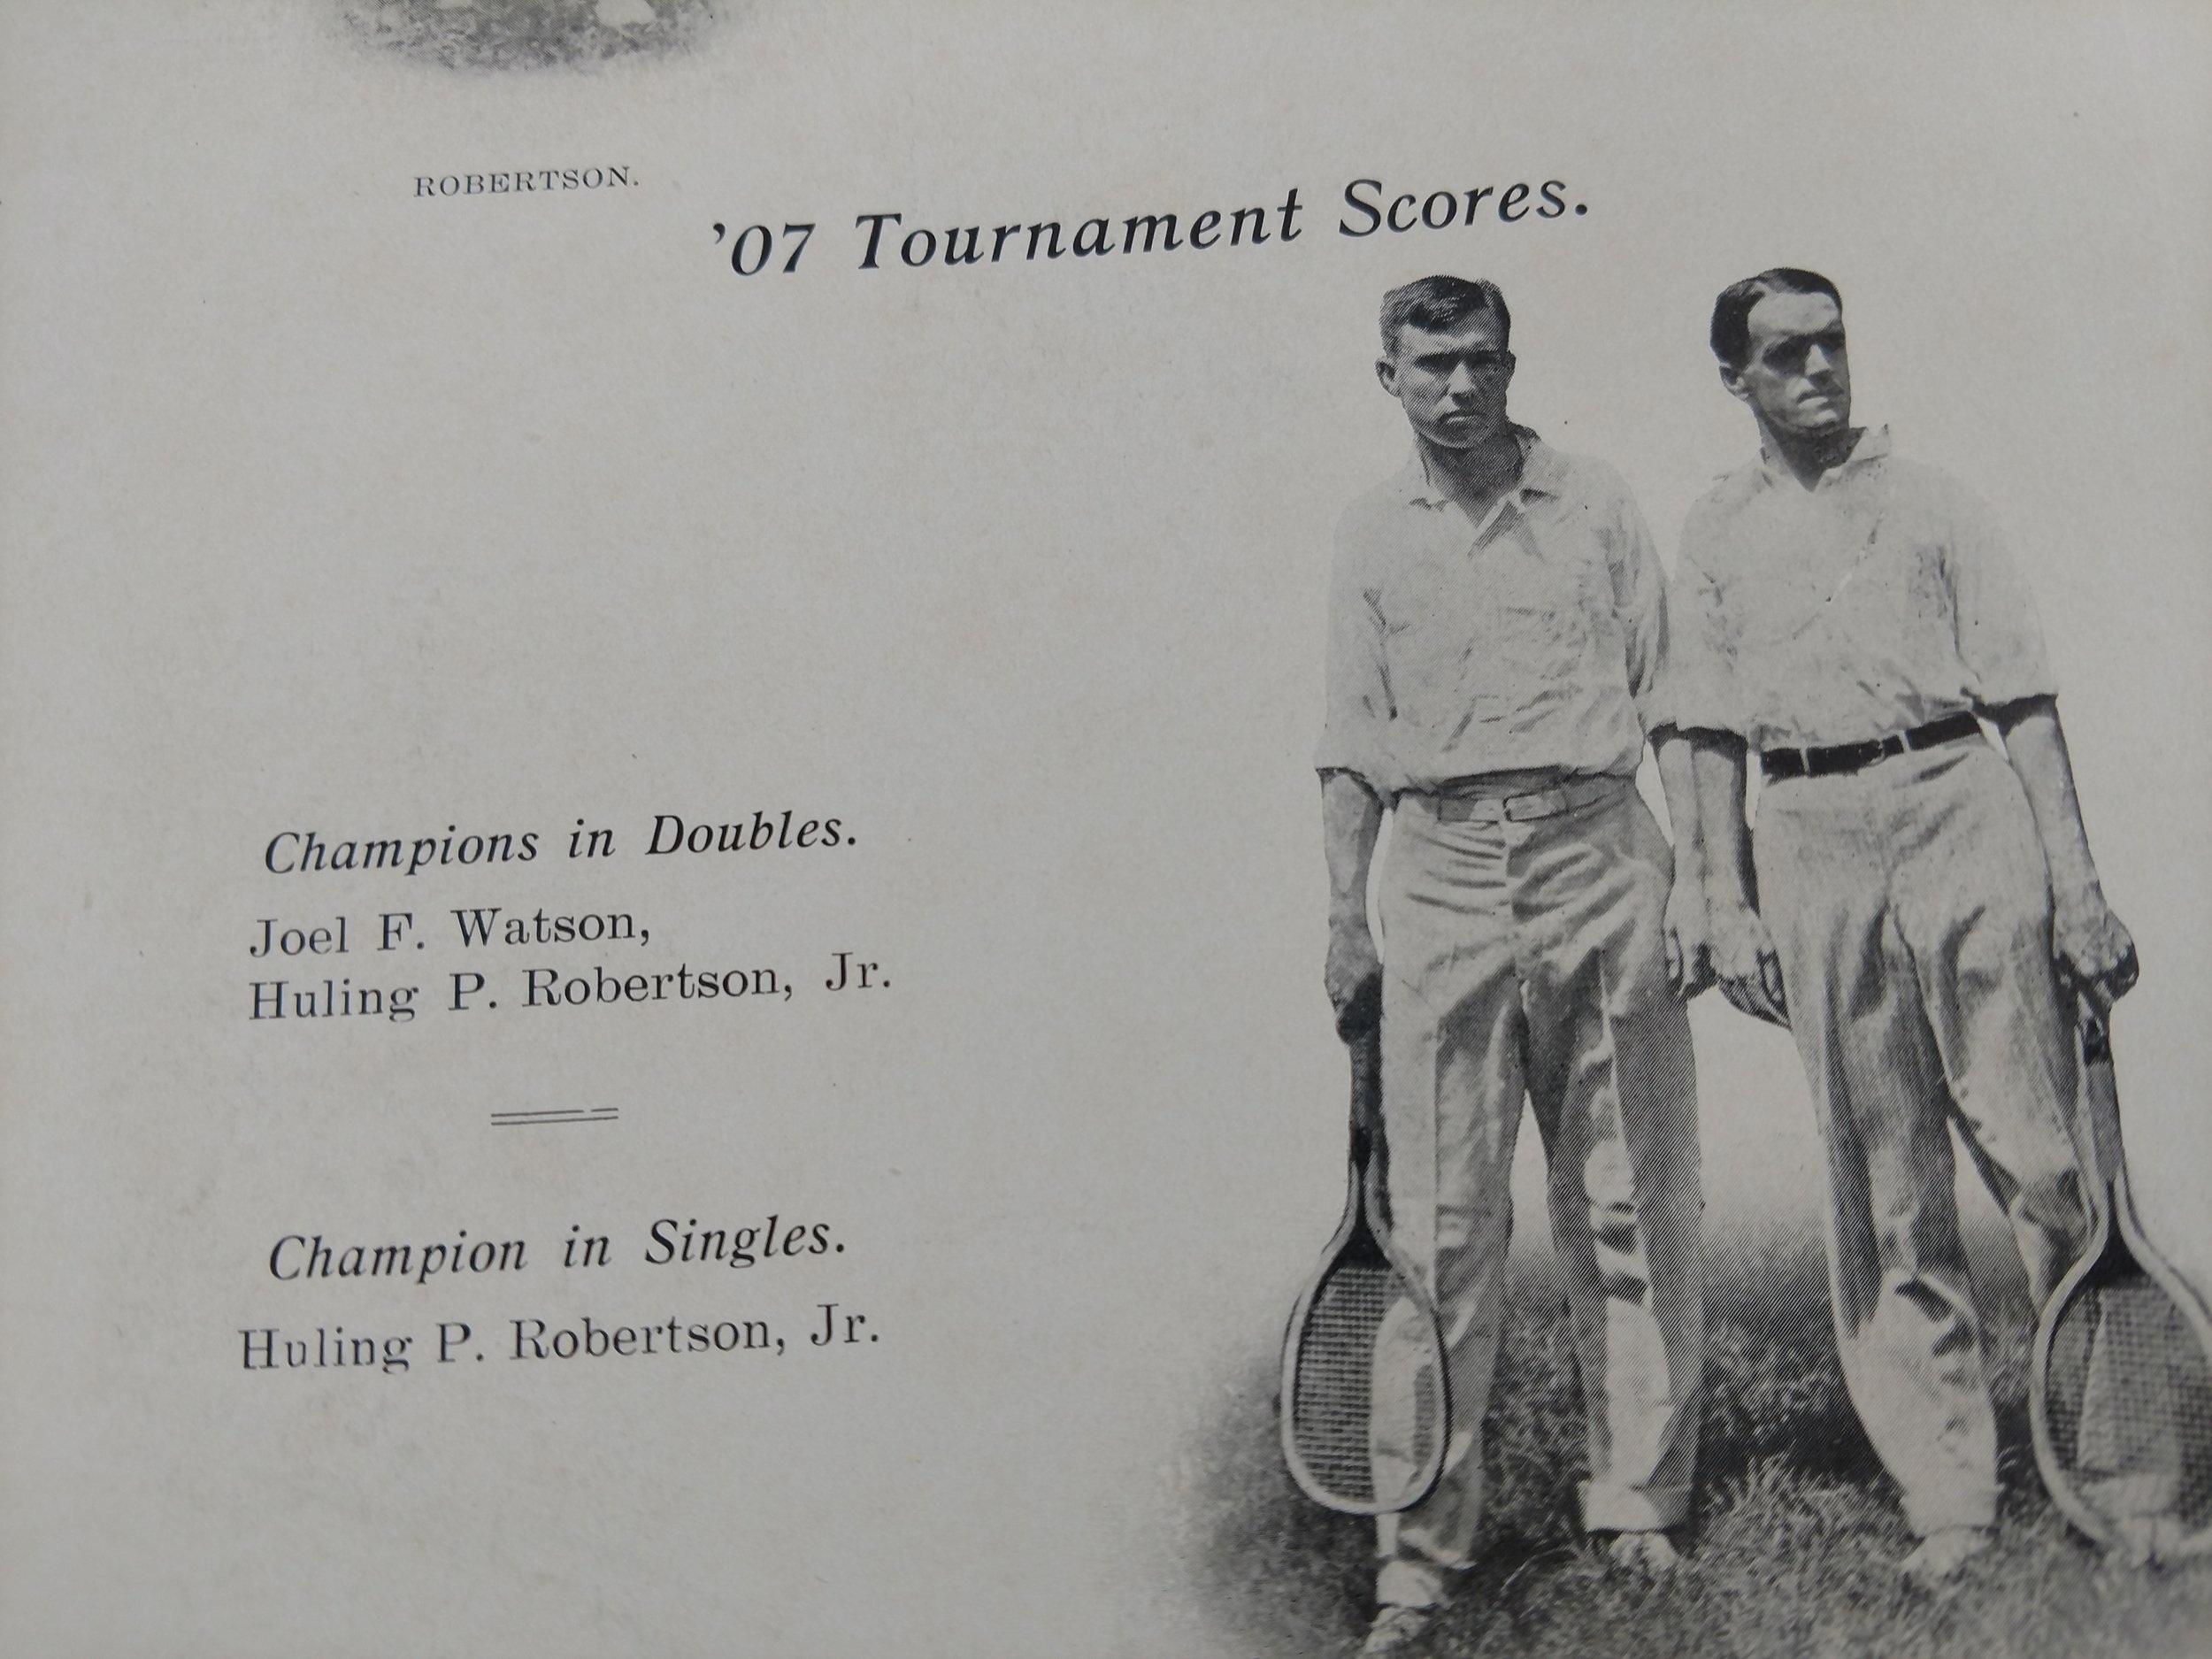 Joel F. Watson and Huling P. Robertson win doubles championship